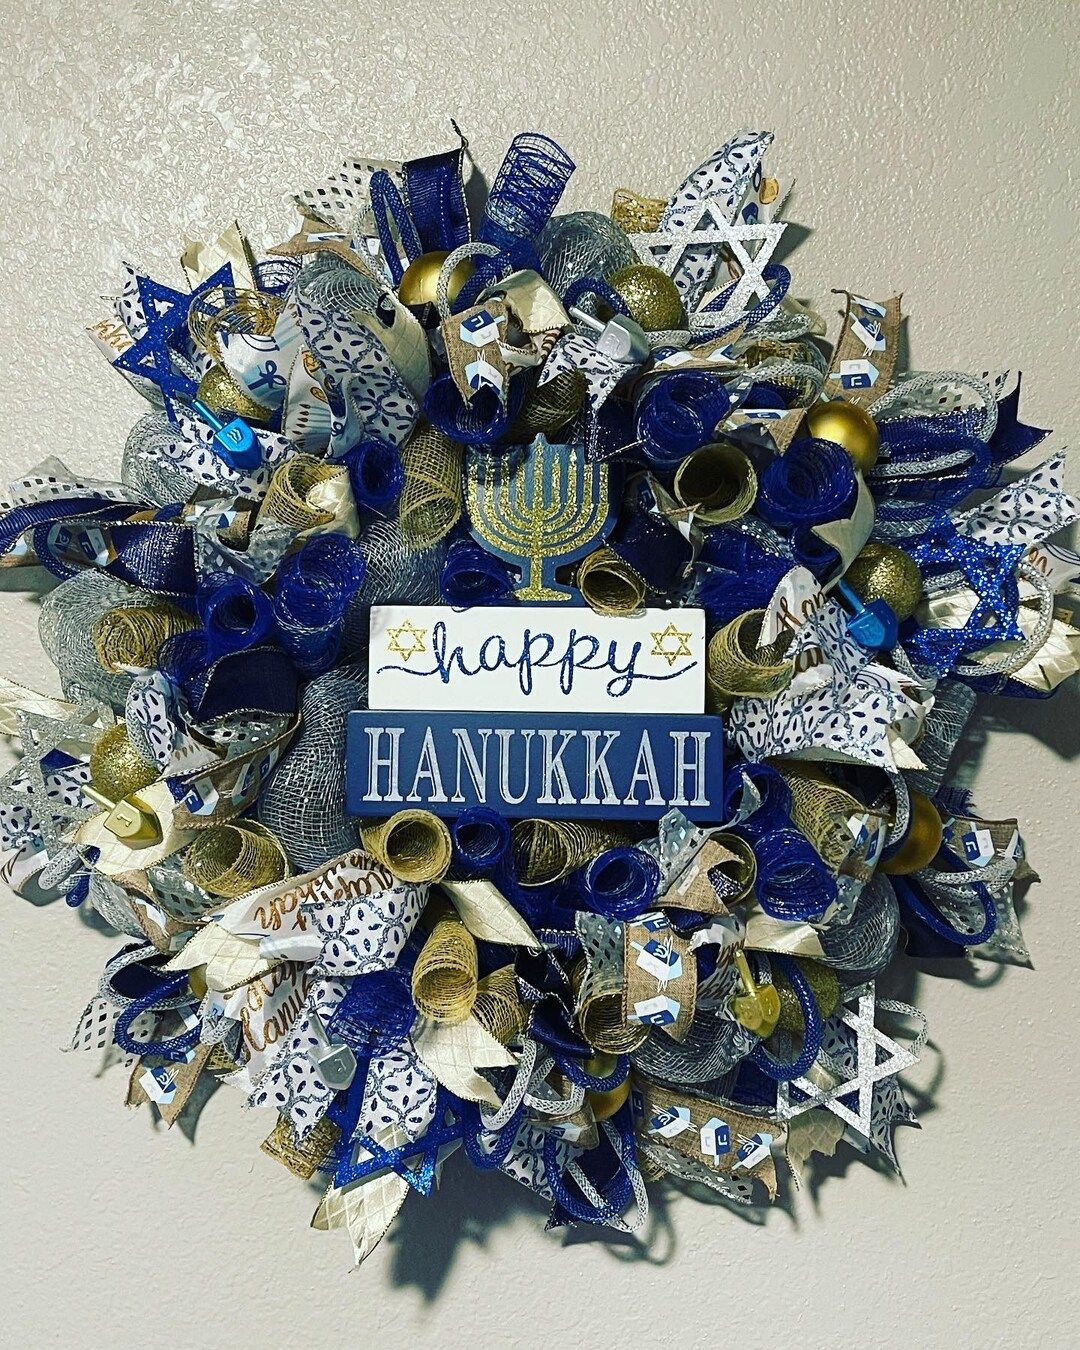 Happy Hanukkah deco mesh wreath | Etsy (US)